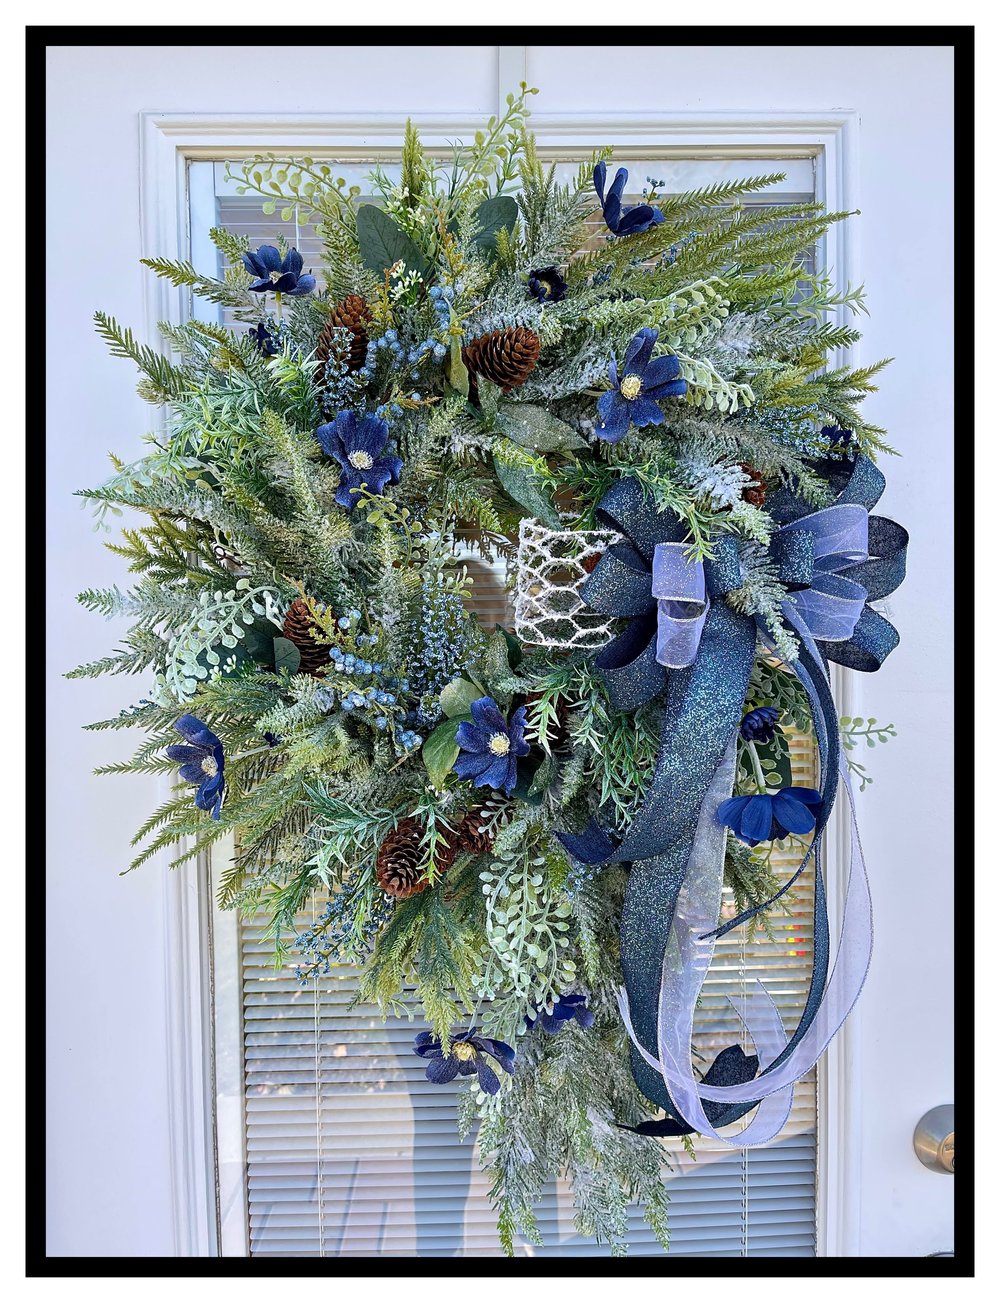 Elegant Valentine's Day Wreath | Front Door Valentine Wreath | Sugar Creek  Home Decor